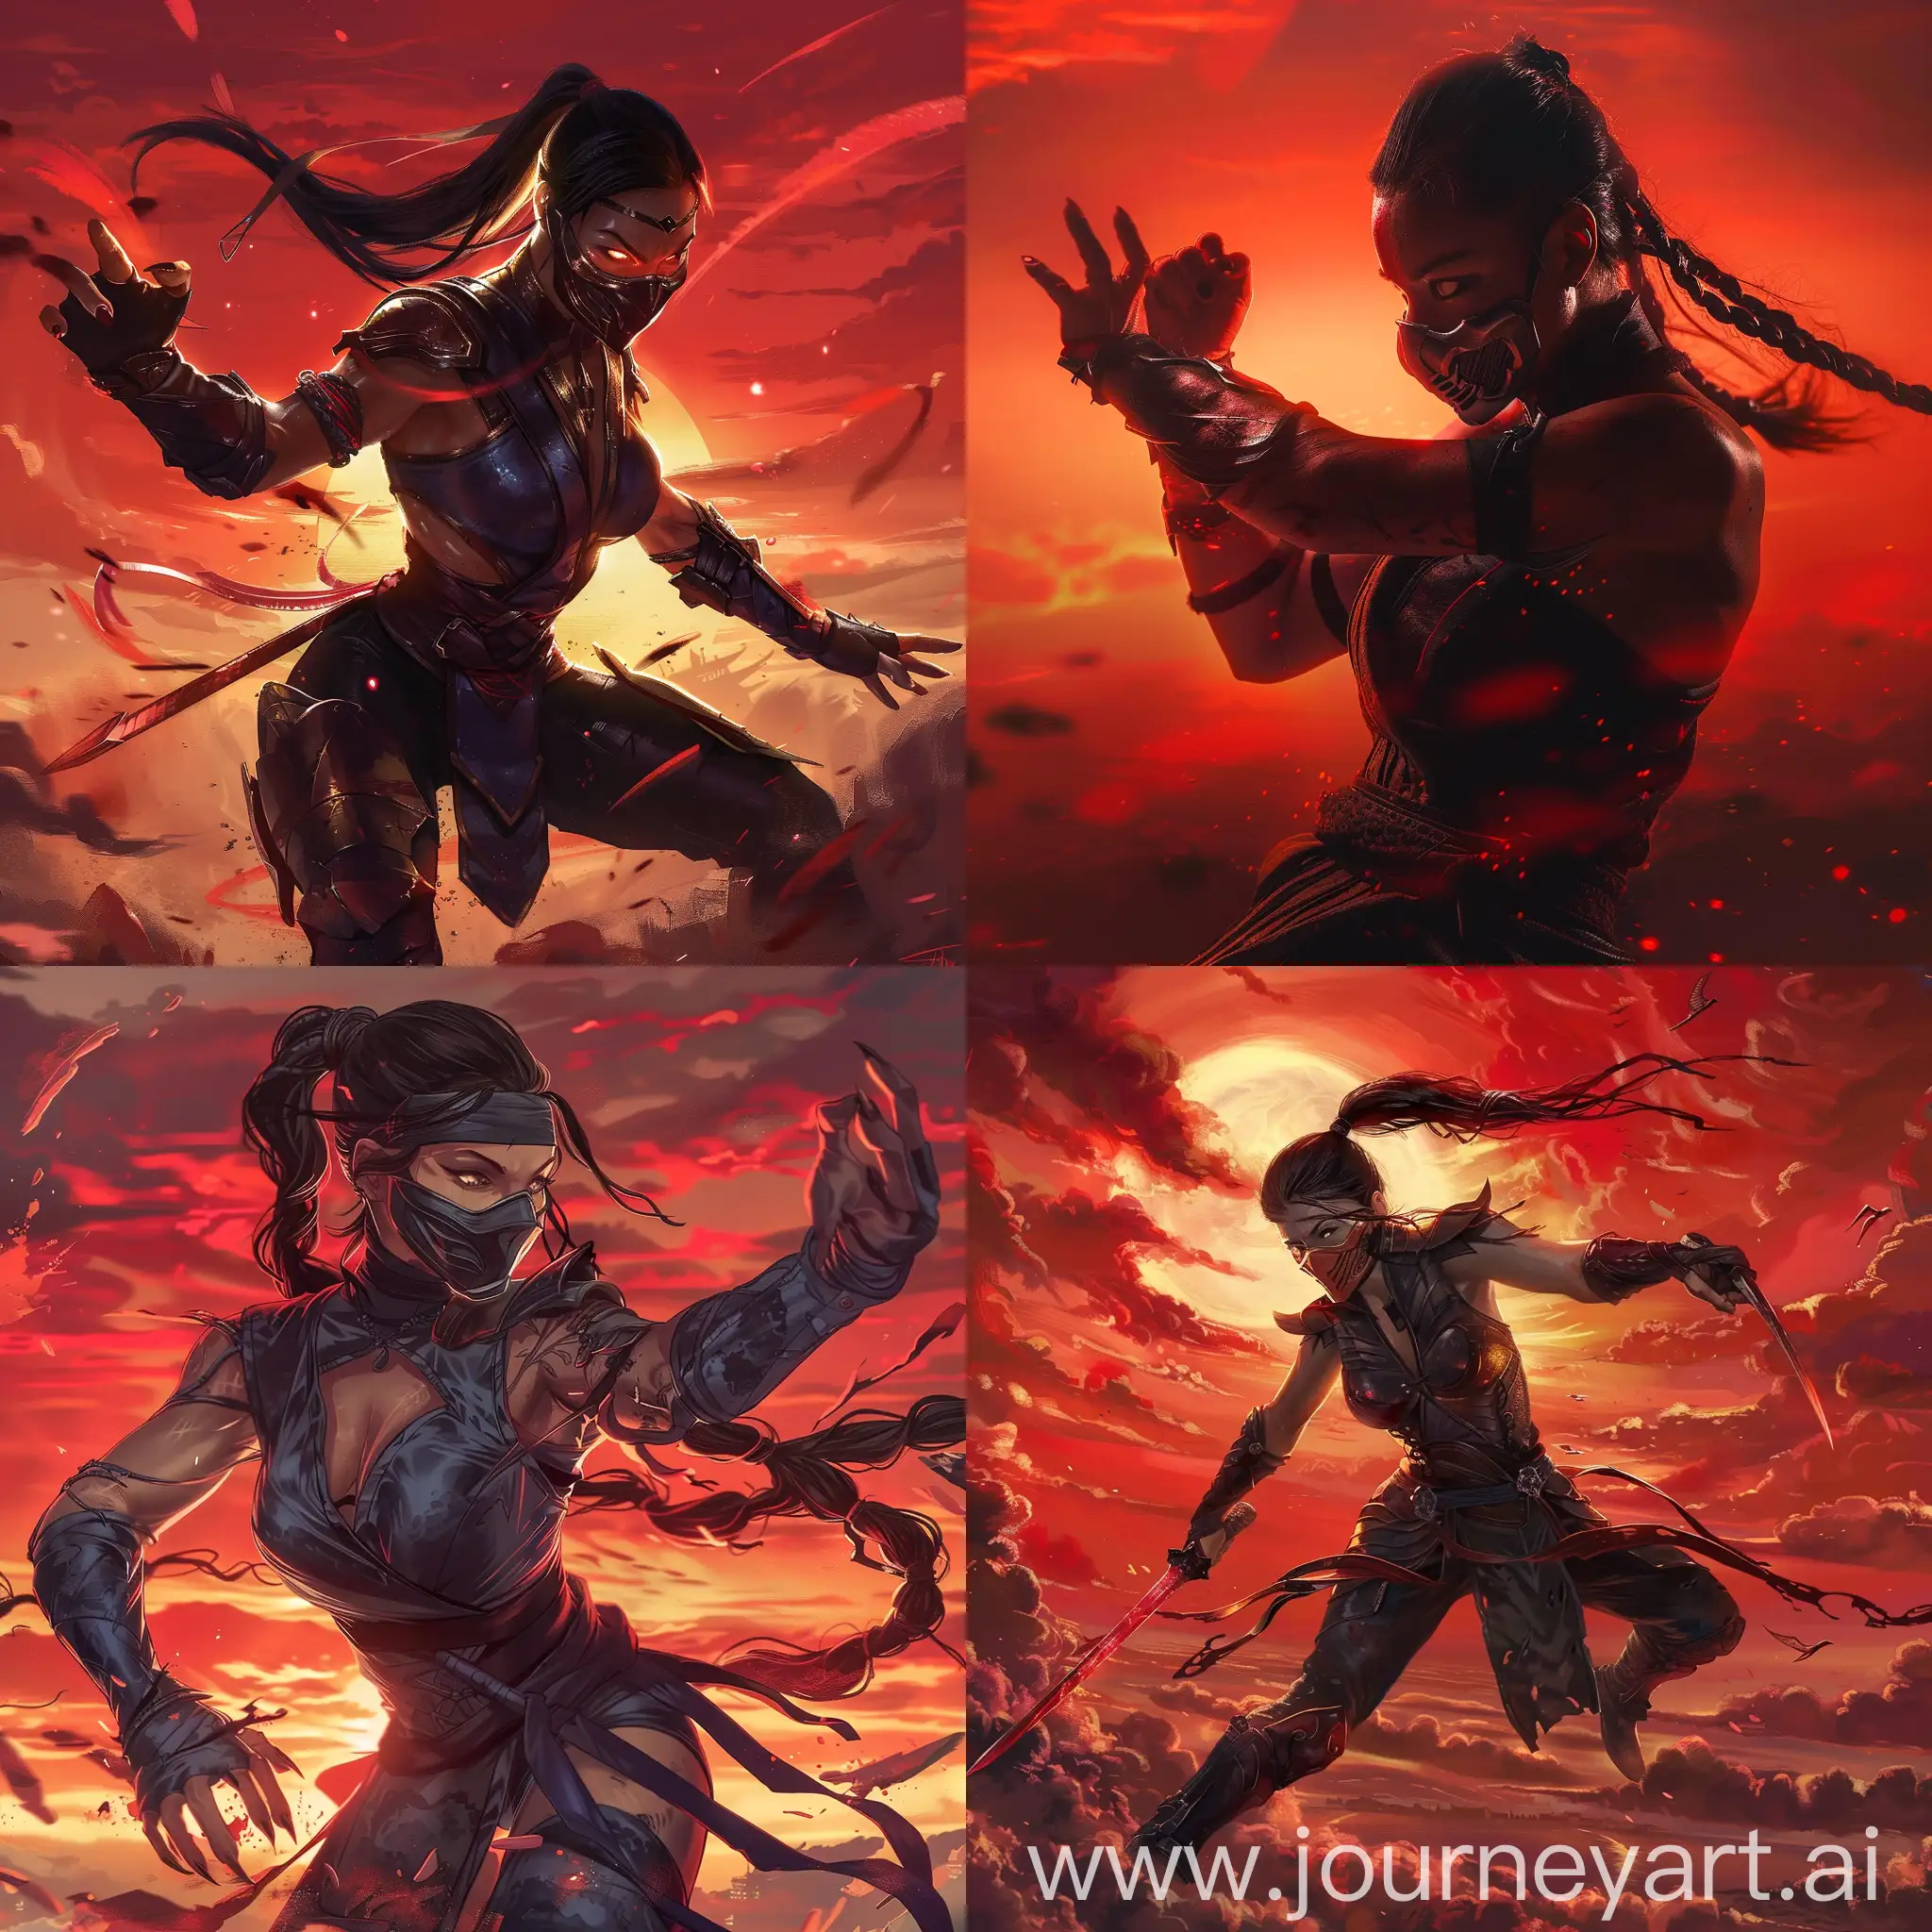 Kitana (Mortal kombat), full-body, fighting, red sky